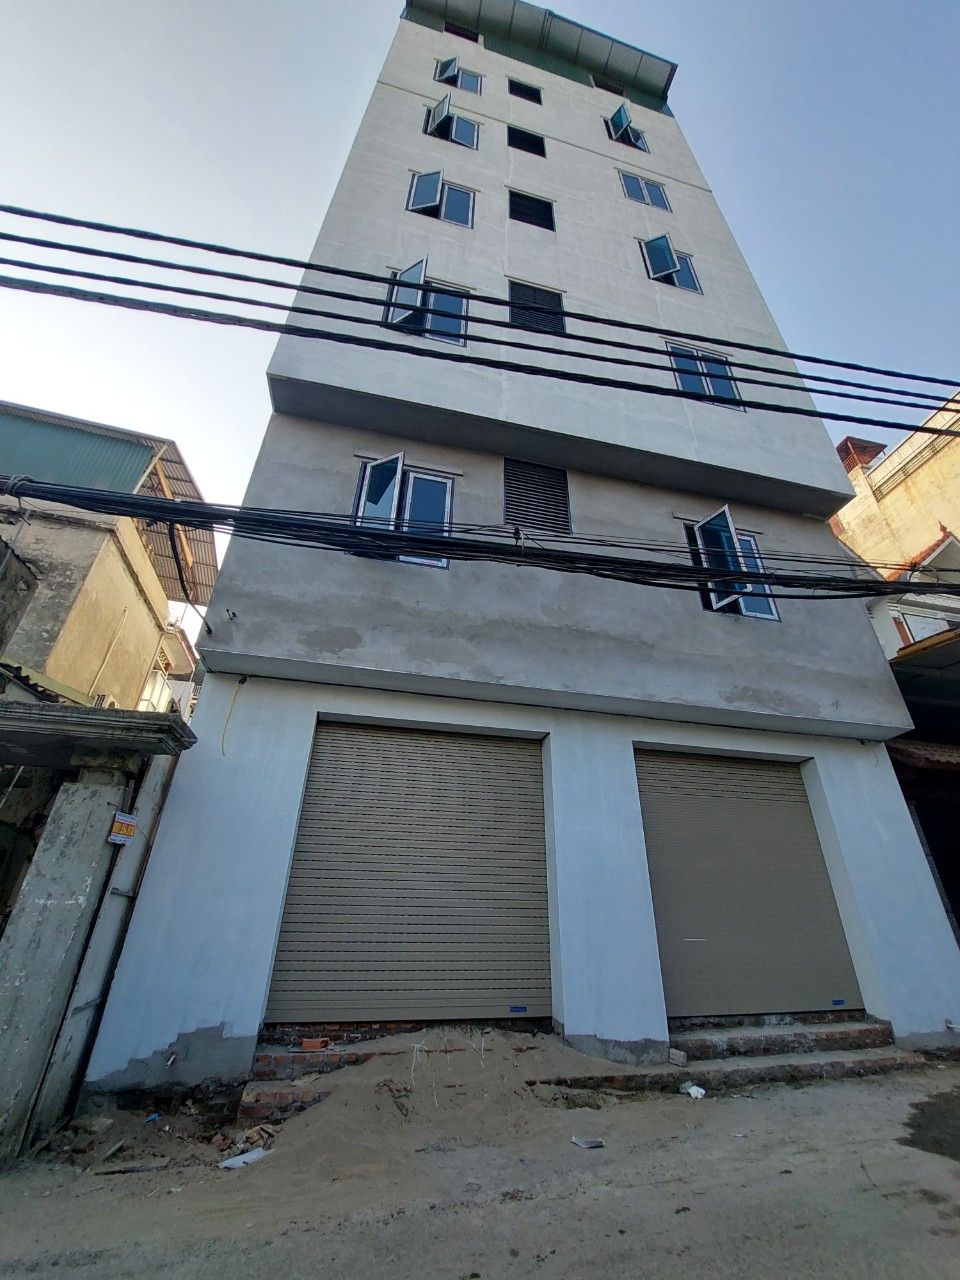 Công trình xây dựng tại TDP Ngọc Trục thuộc phường Đại Mỗ đã bị UBND quận Nam Từ Liêm ra quyết định buộc cưỡng chế khắc phục hậu quả khi chủ đầu tư xây dựng sai phép, vượt diện tích được cấp phép.